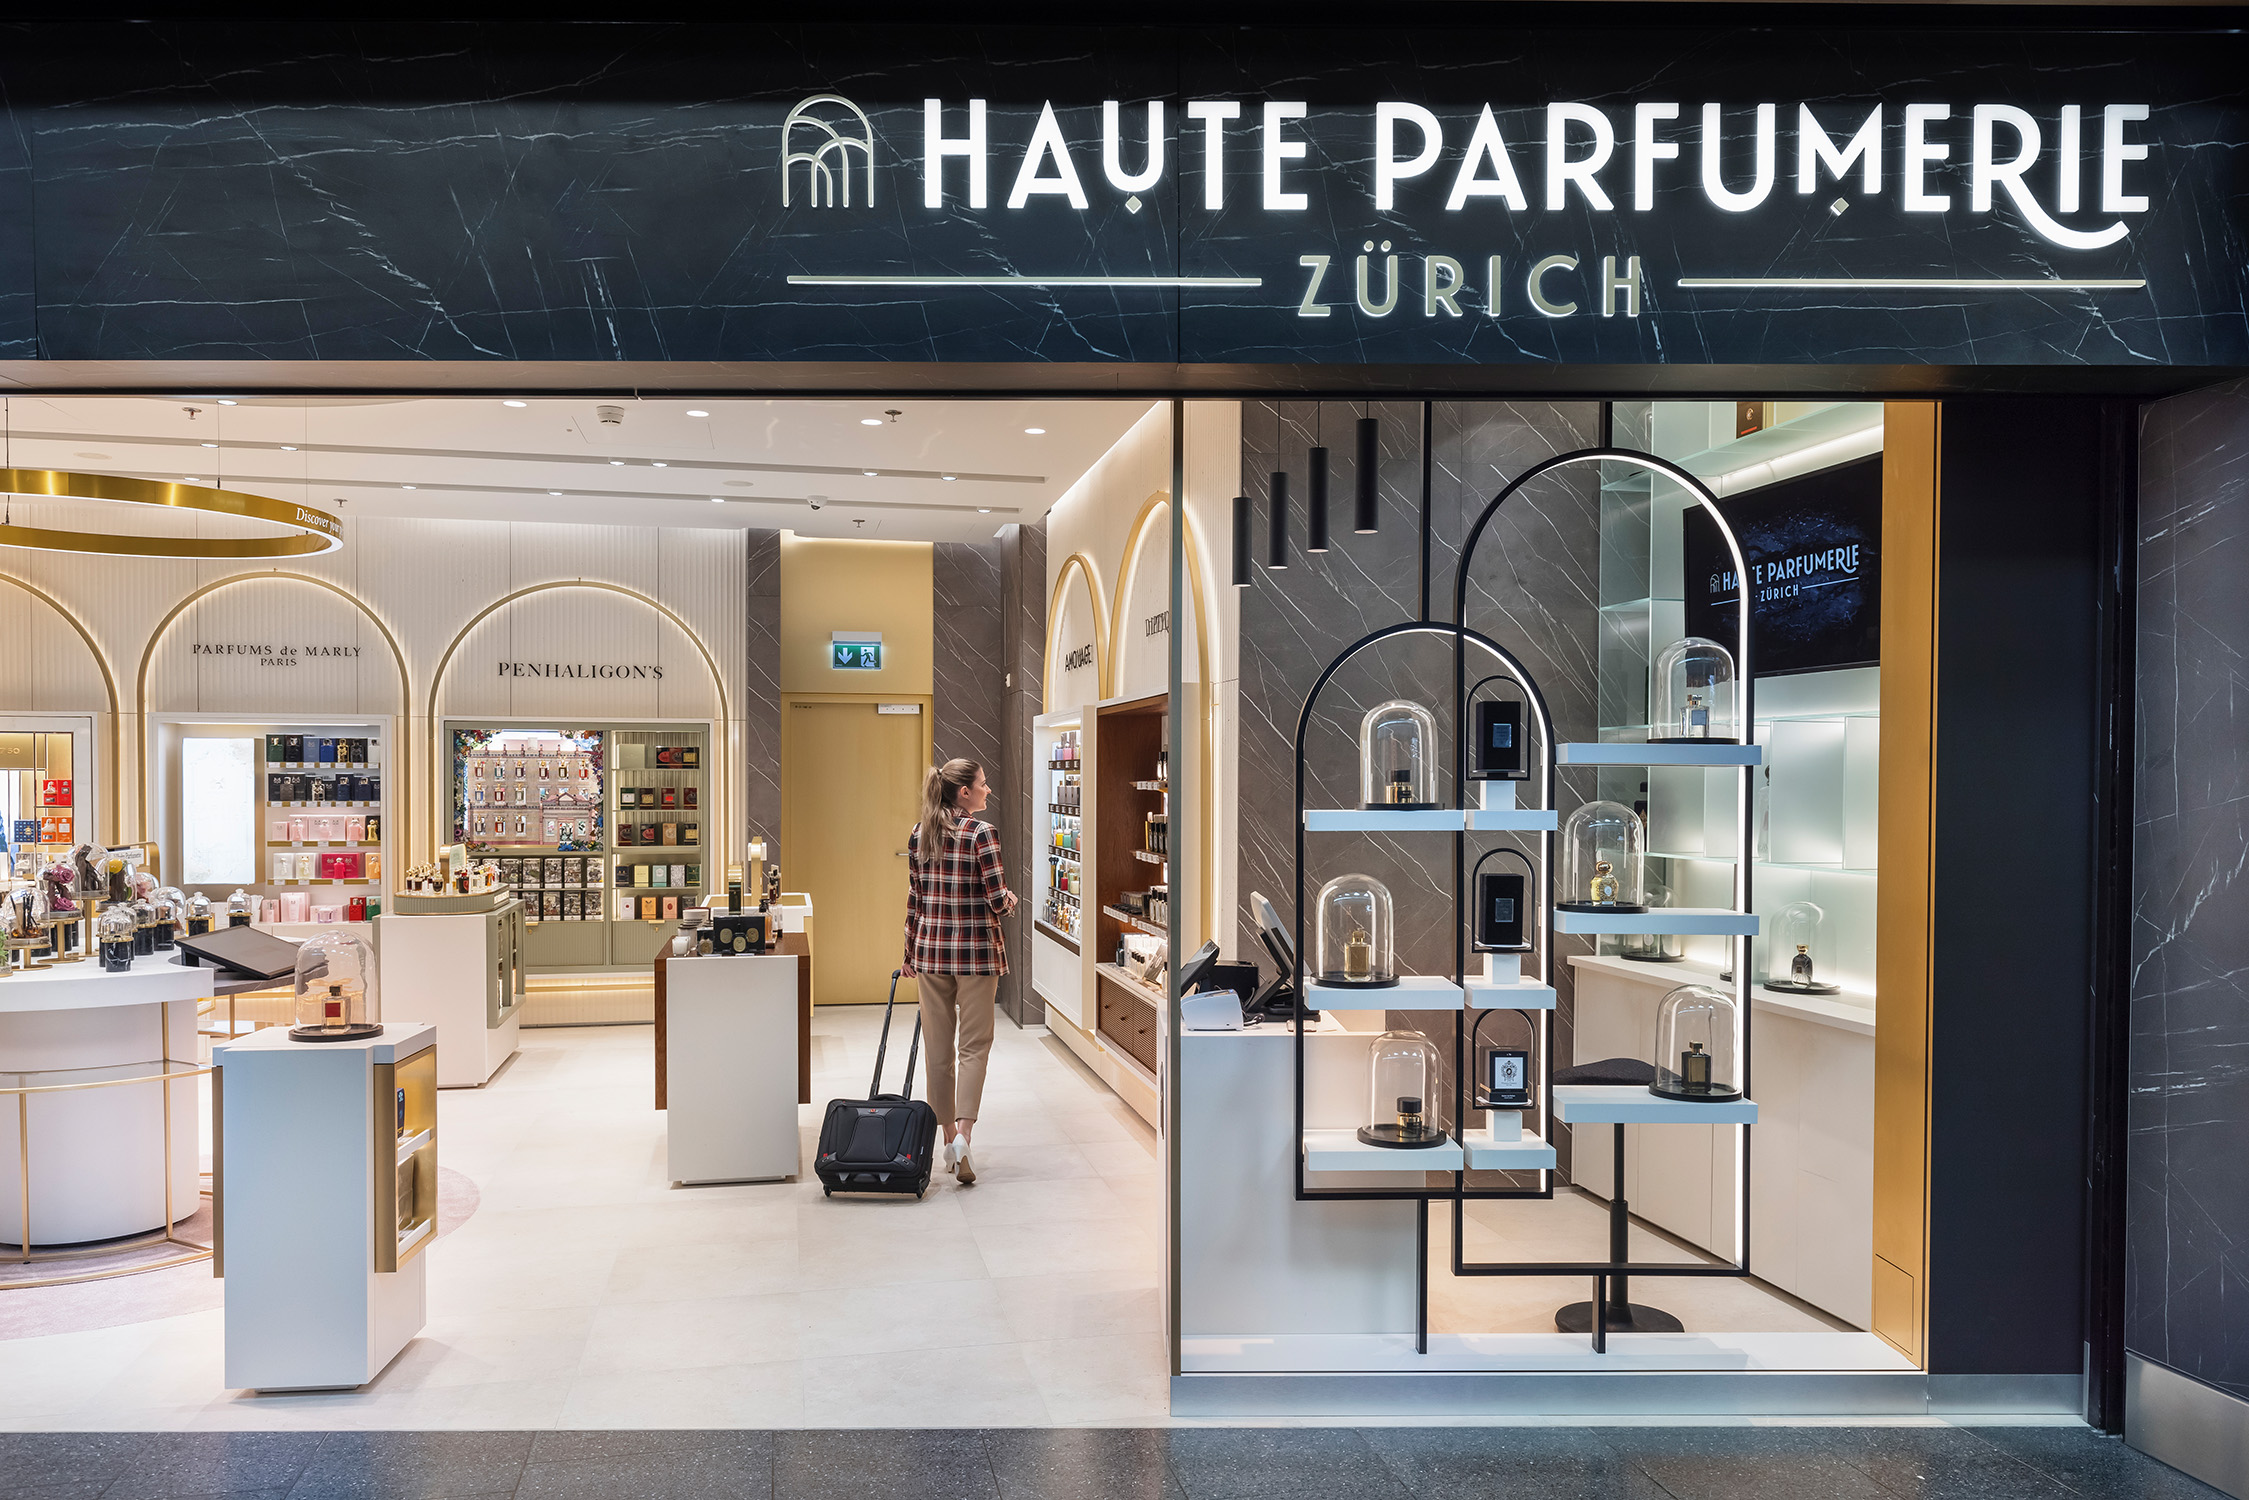 Haute Parfumerie (Zurich)_Dufry 10